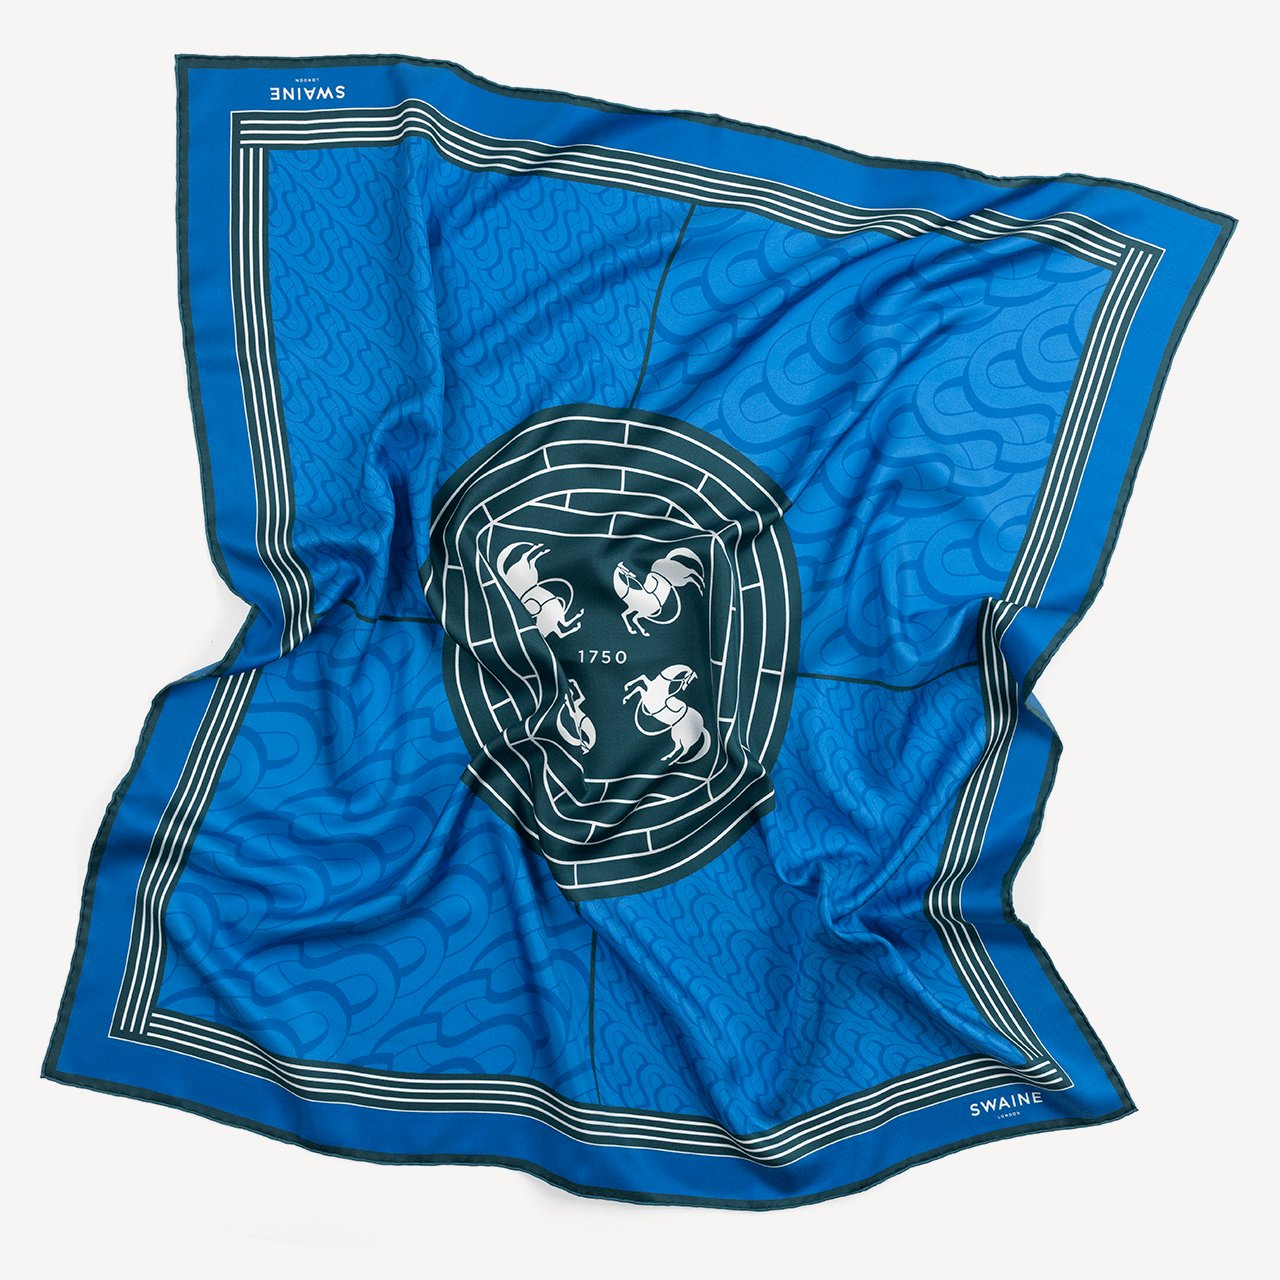 モノグラム シルク スカーフ - ブルー - Swaine